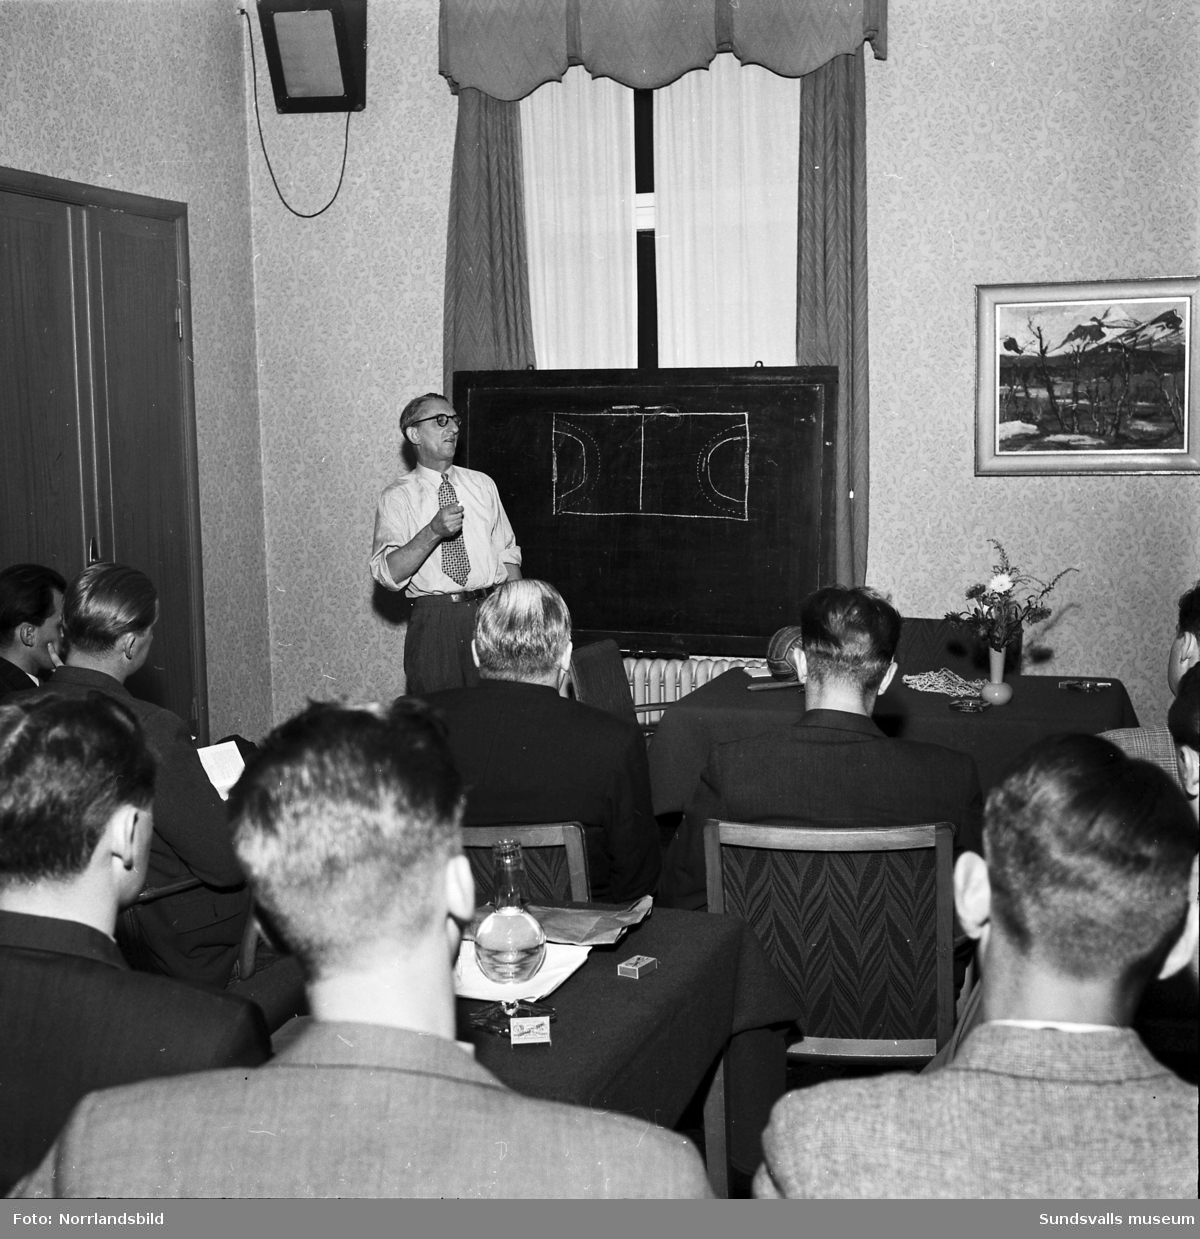 Kurs för fotbollsdomare på Centralhotellet 1953. En kvinna återfinns i den i övrigt mansdominerade församlingen.